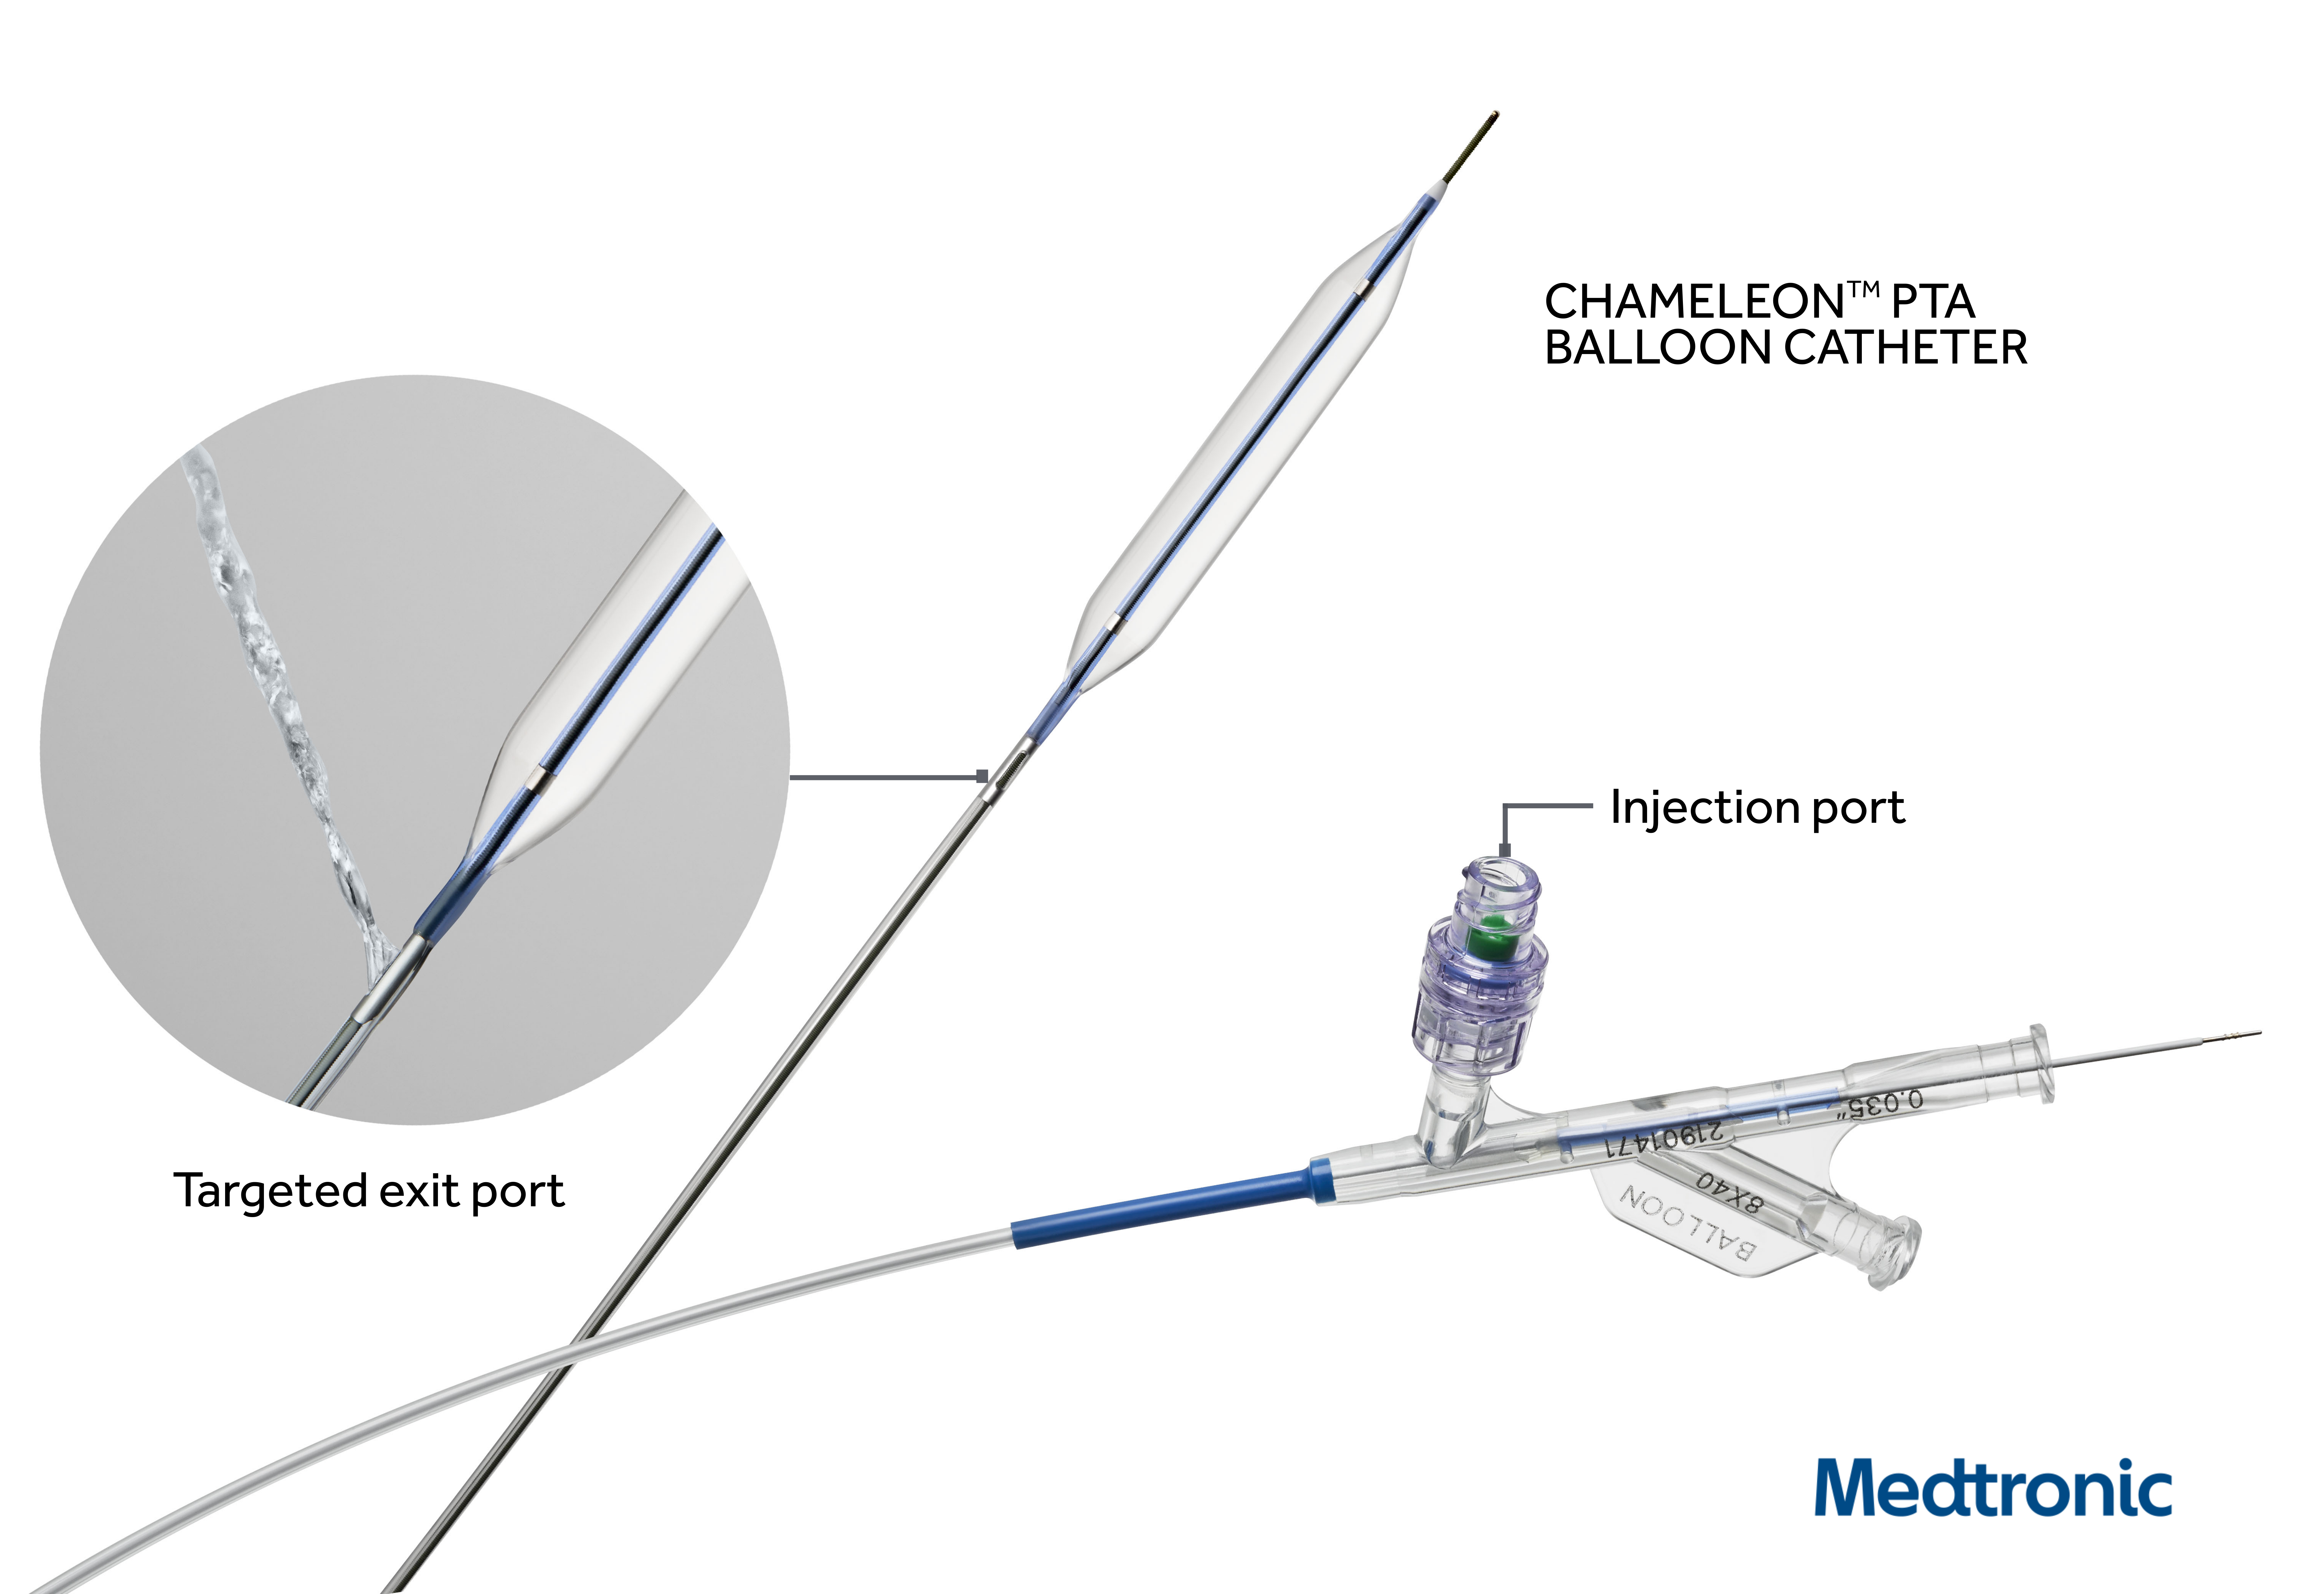 Agnes Gray Mm aanplakbiljet Medtronic's Chameleon PTA Balloon Catheter Studied for Fistula and Graft  Maintenance Procedures - Endovascular Today